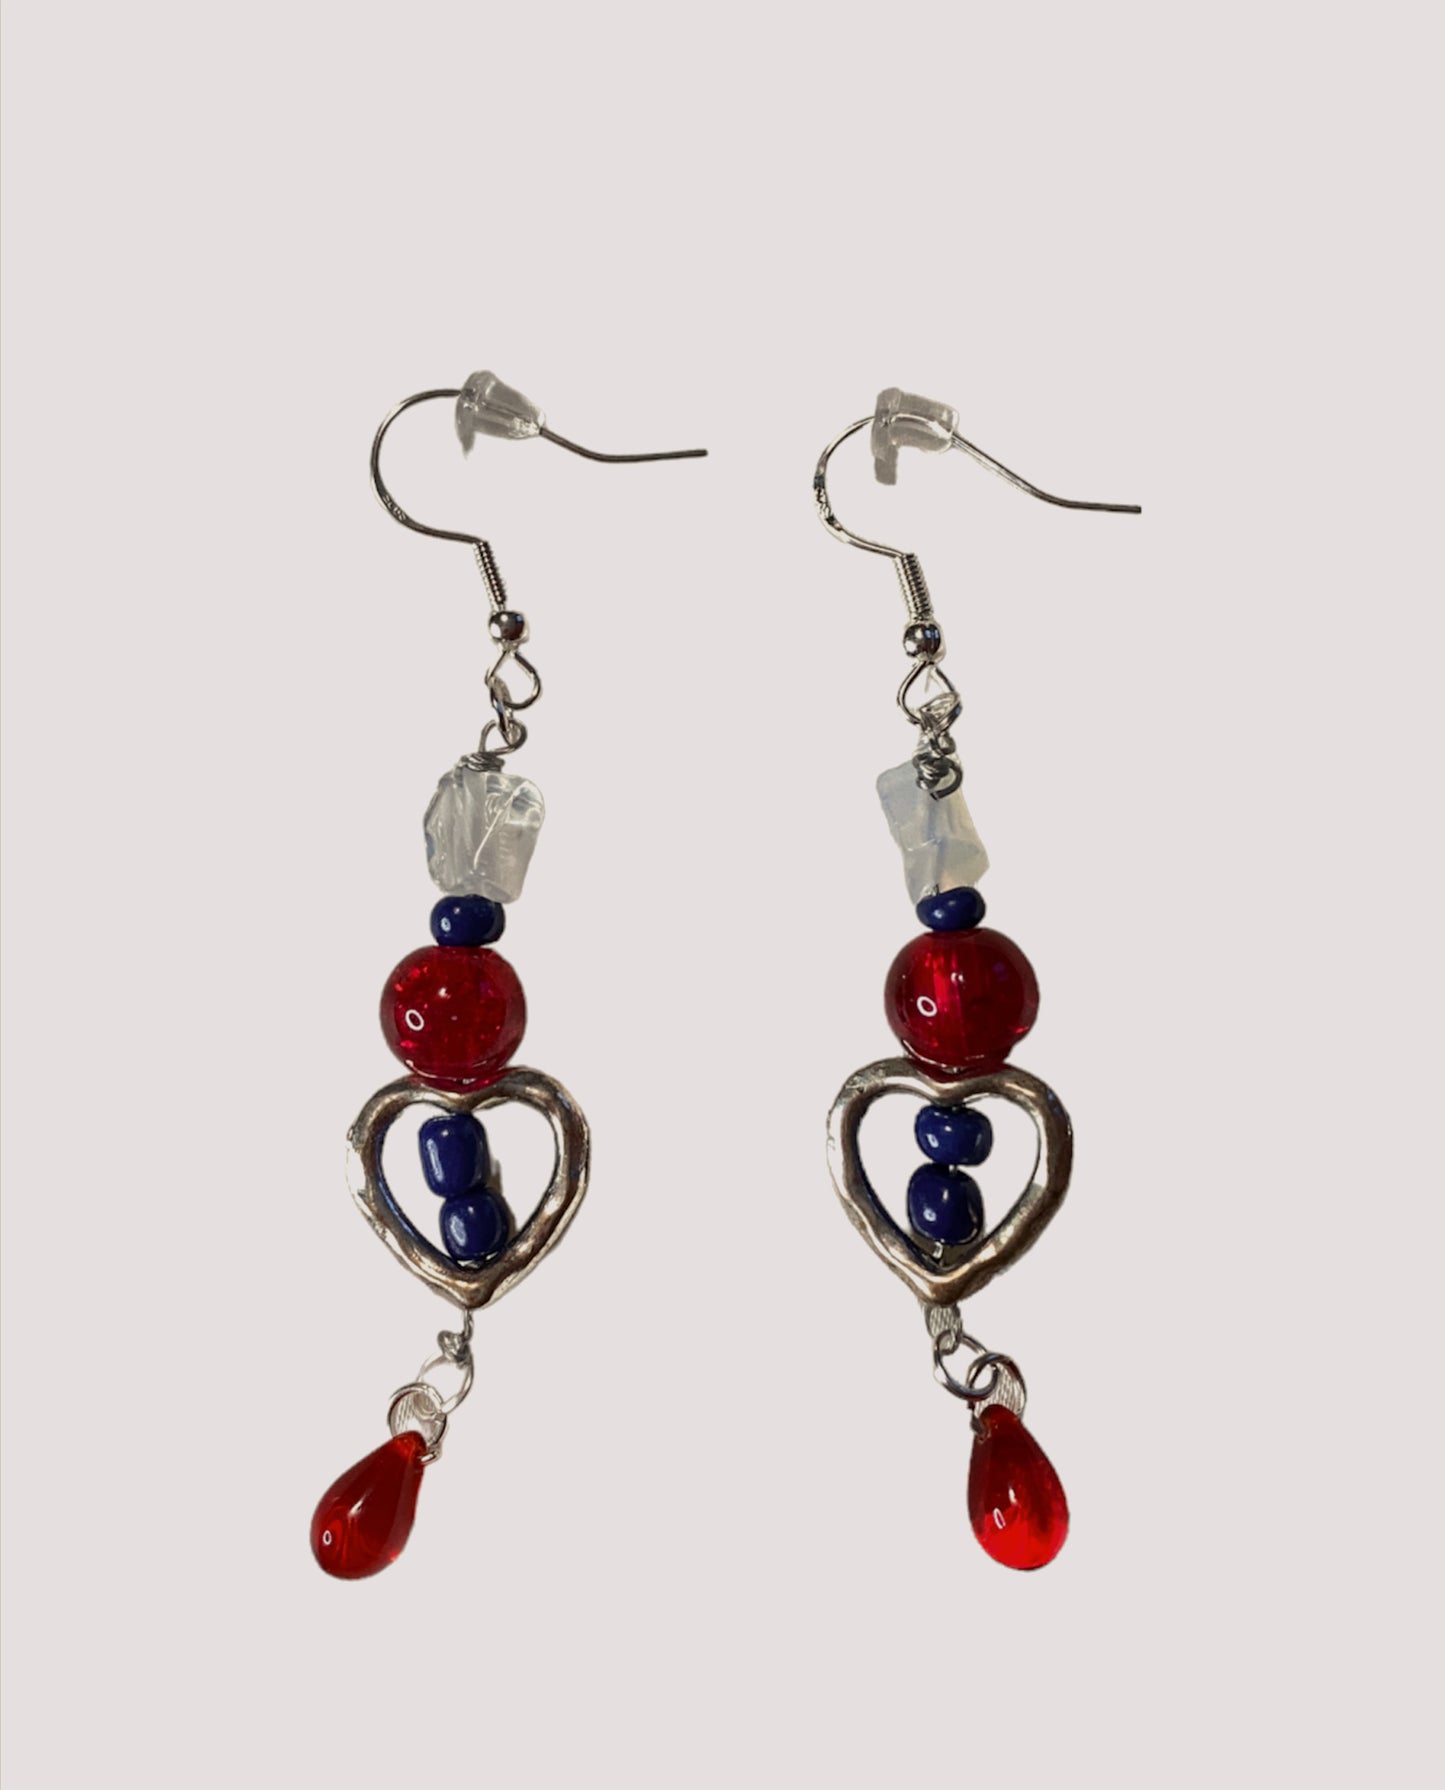 “Honeymoon” earrings